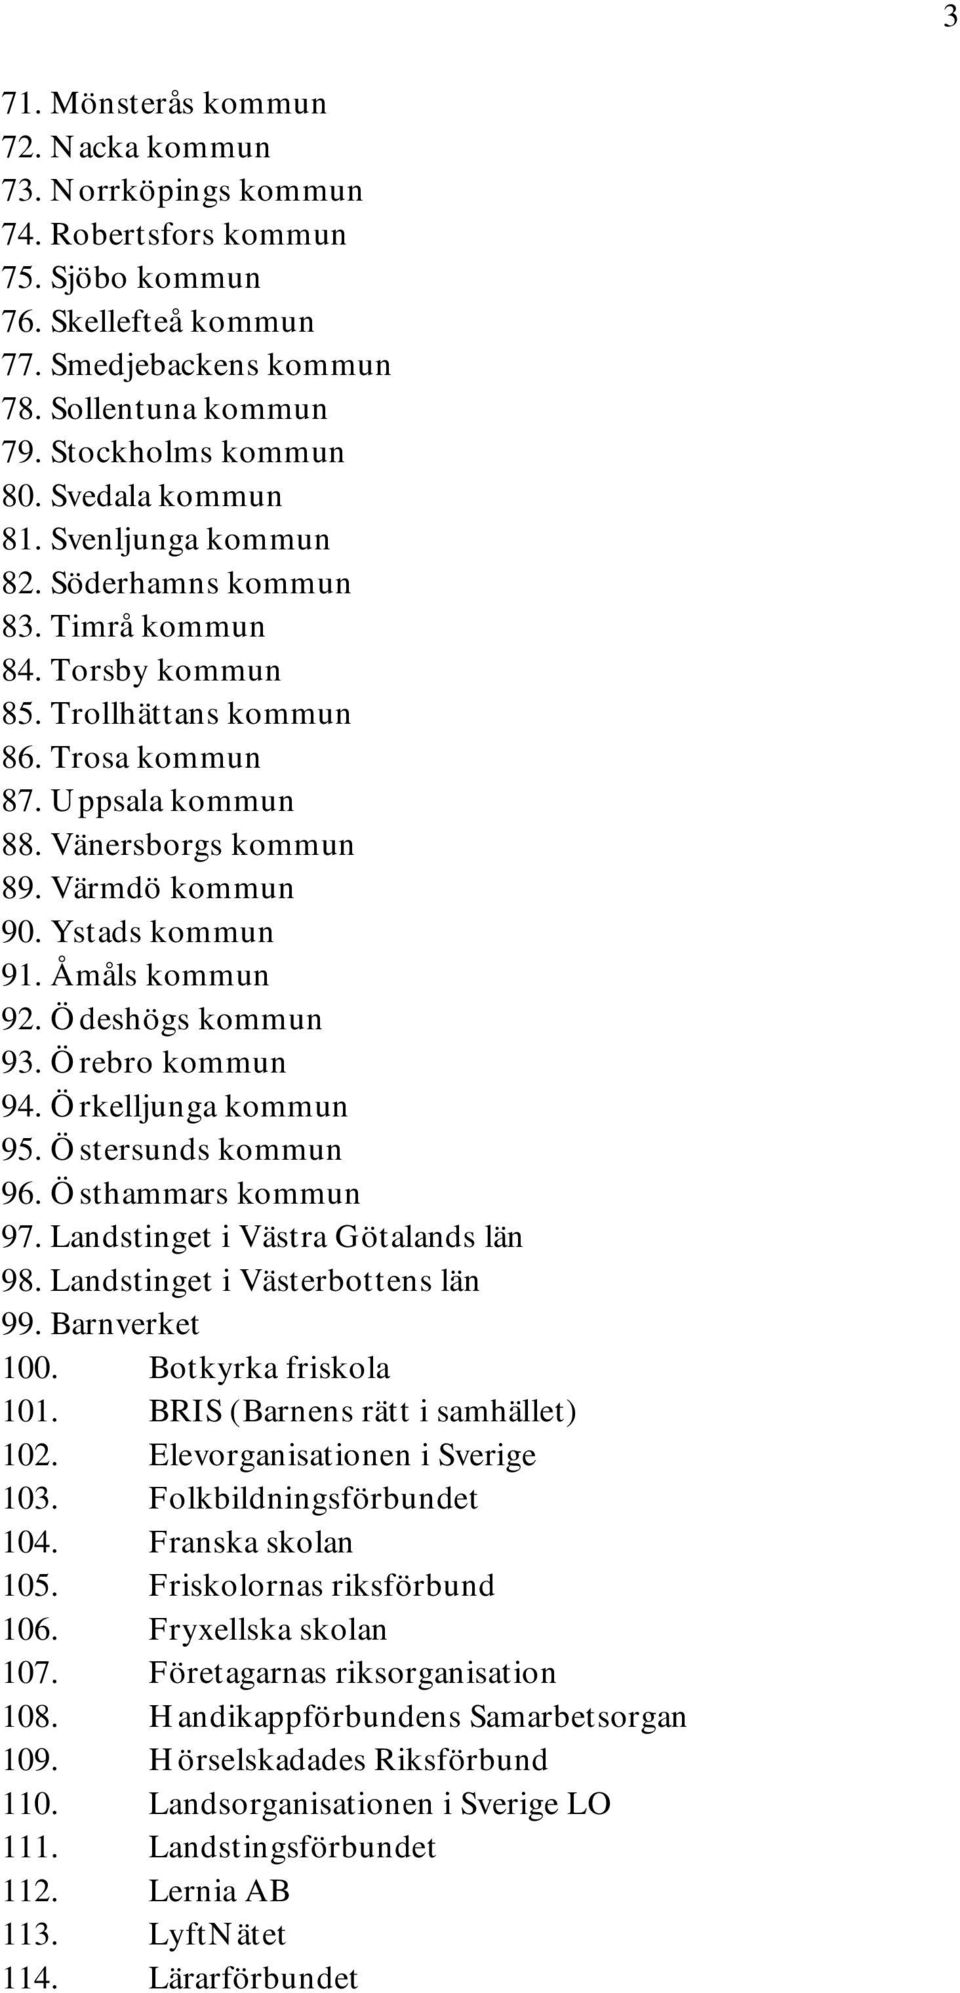 Ystads kommun 91. Åmåls kommun 92. Ödeshögs kommun 93. Örebro kommun 94. Örkelljunga kommun 95. Östersunds kommun 96. Östhammars kommun 97. Landstinget i Västra Götalands län 98.